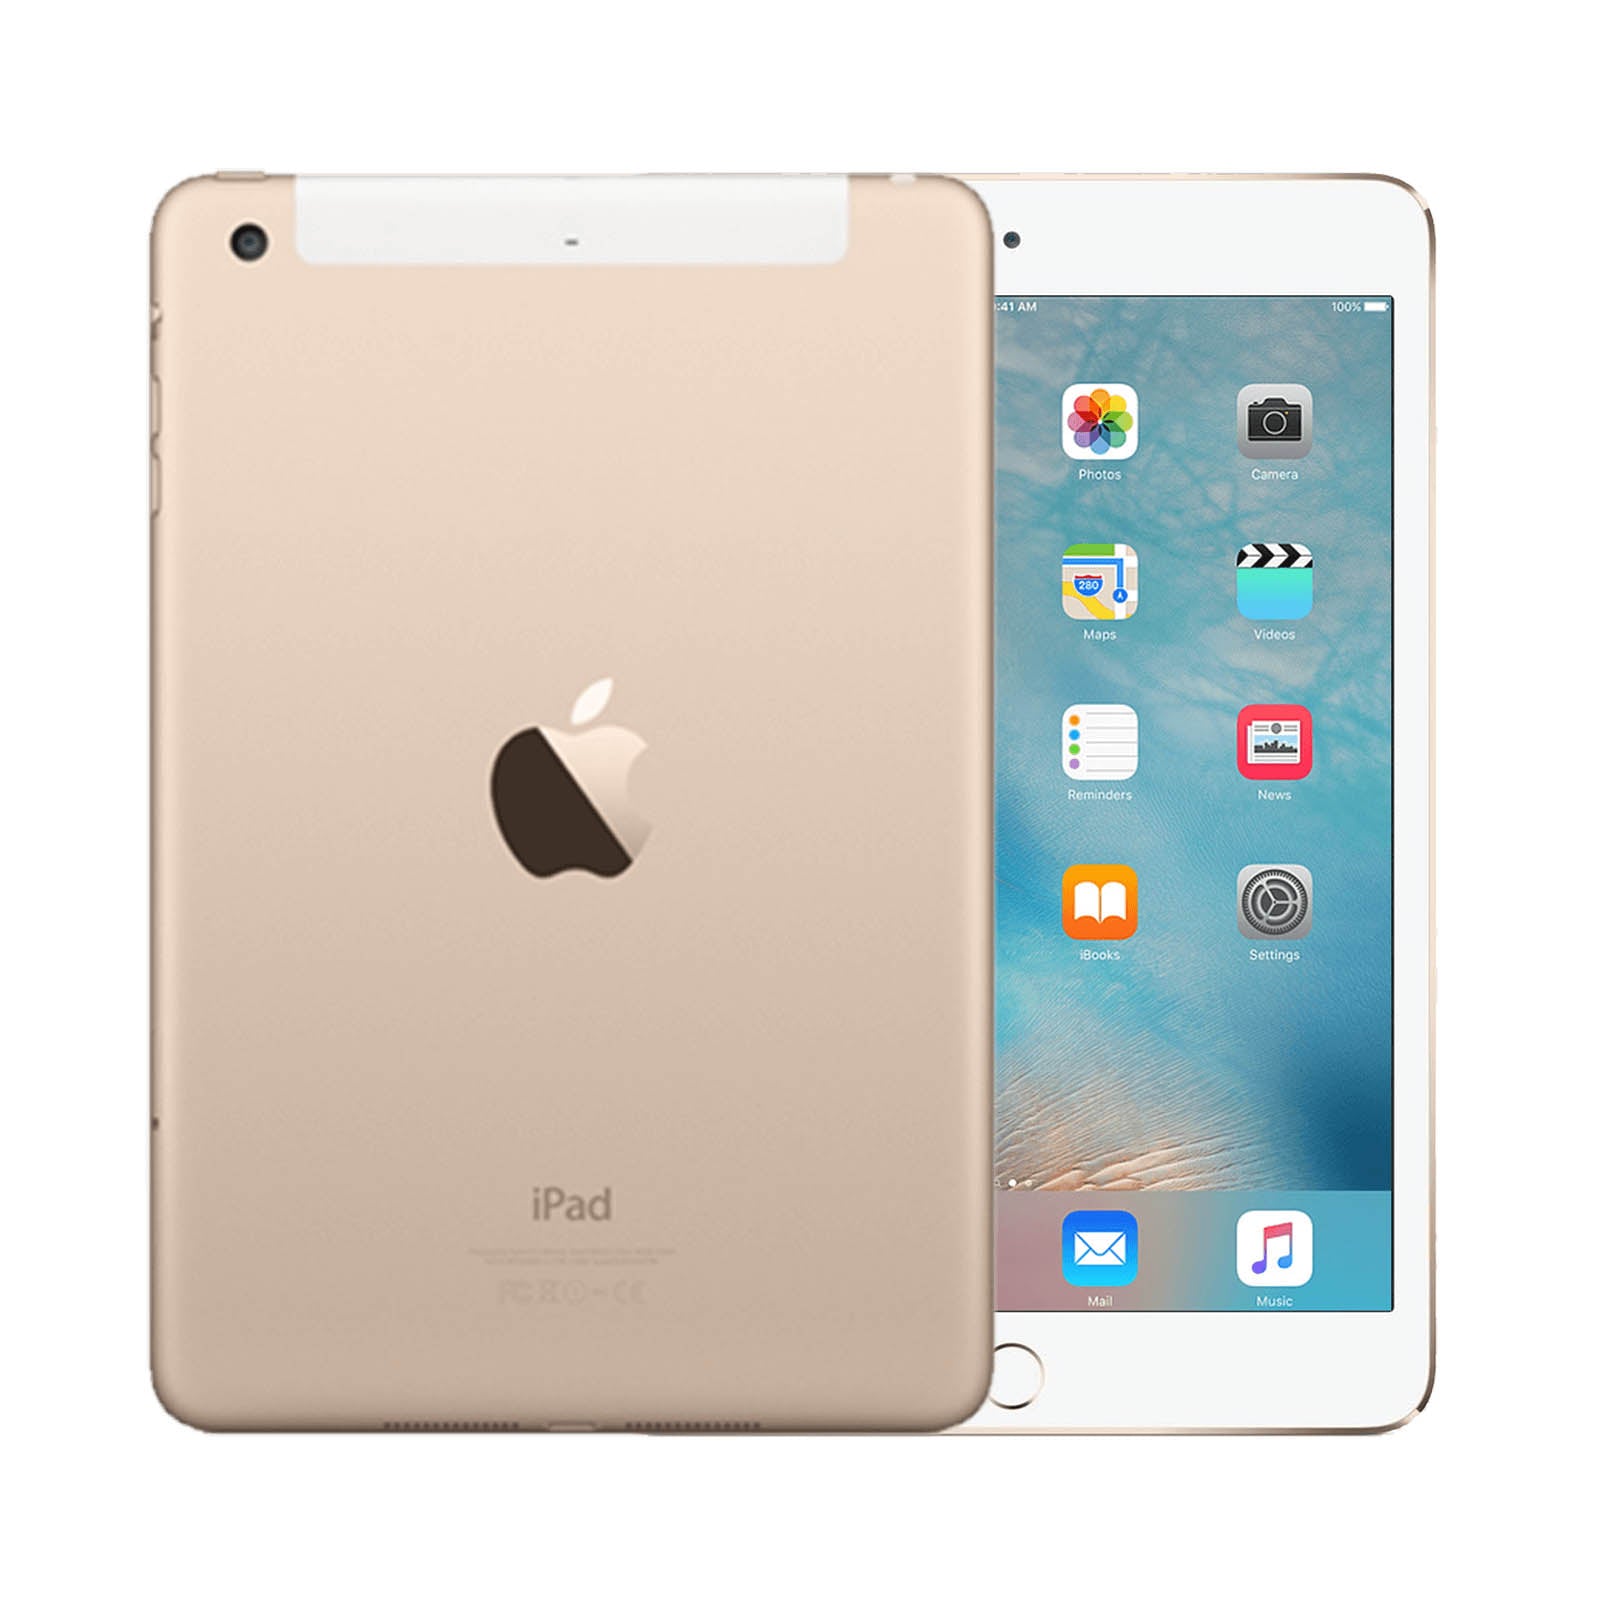 iPad mini セルラー Wi-Fi ゴールド色